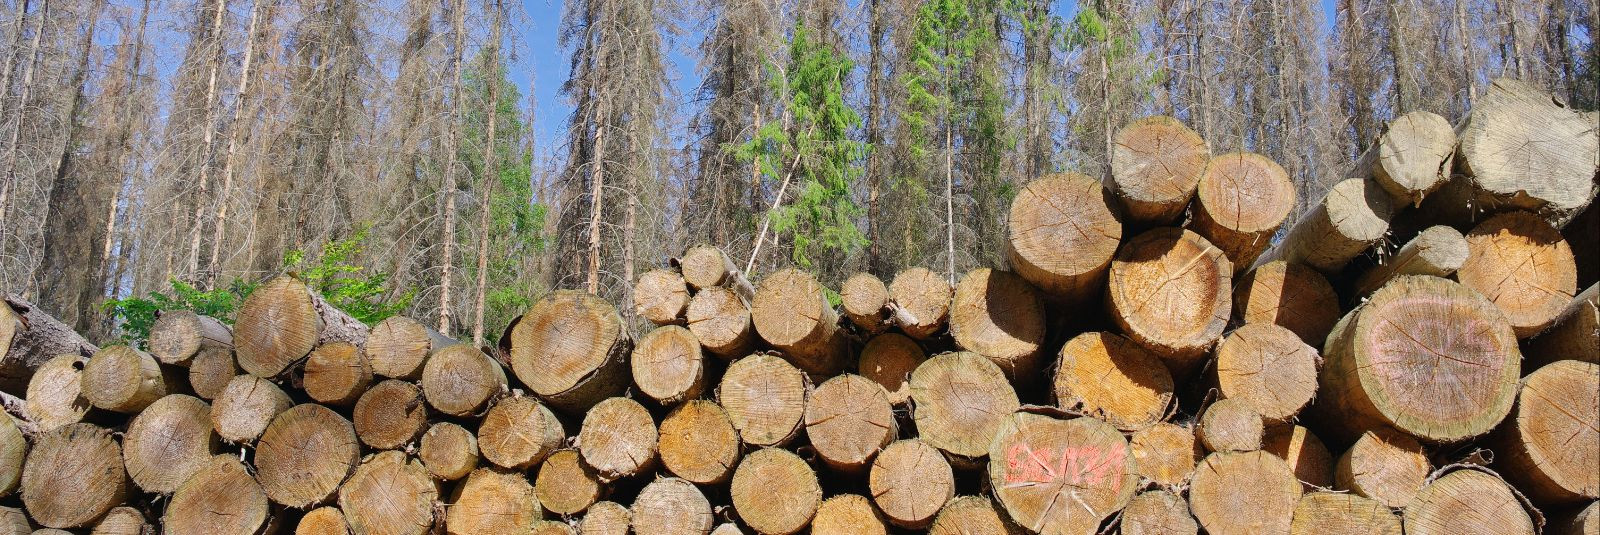 Harvendusraie on oluline osa metsamajandusest, mis võimaldab metsapuude kasvu reguleerida ning puistu kvaliteeti parandada. Harvendusraied erinevad lageraiest n